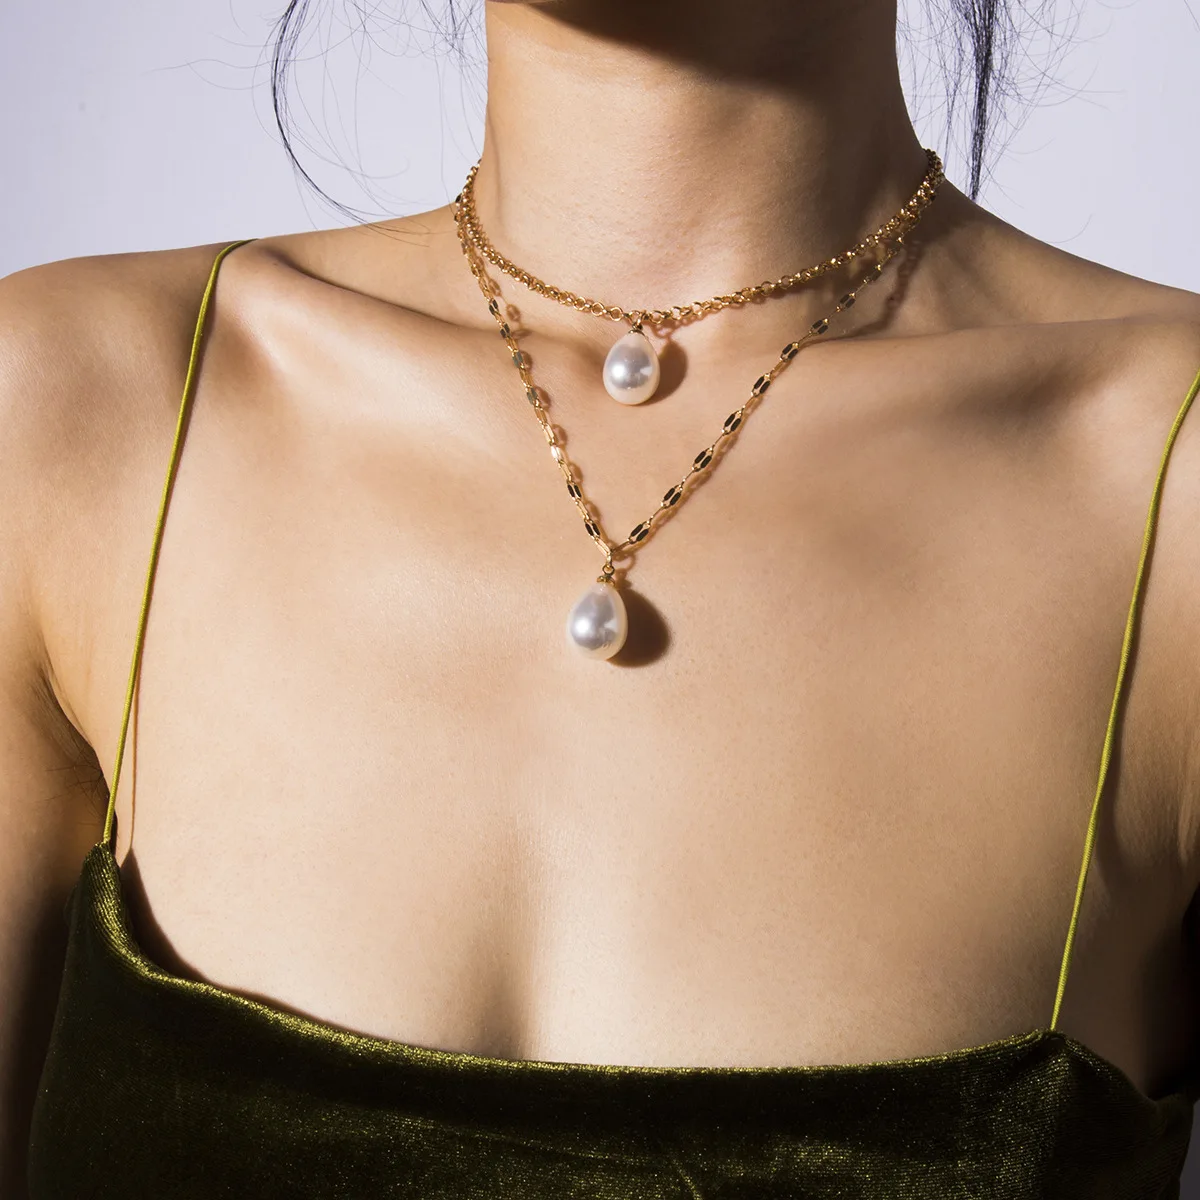 ZA Новая мода золотистый цвет, много слоев цепочки жемчужные ожерелья геометрические хрустальные подвески ожерелья для женщин Bijoux